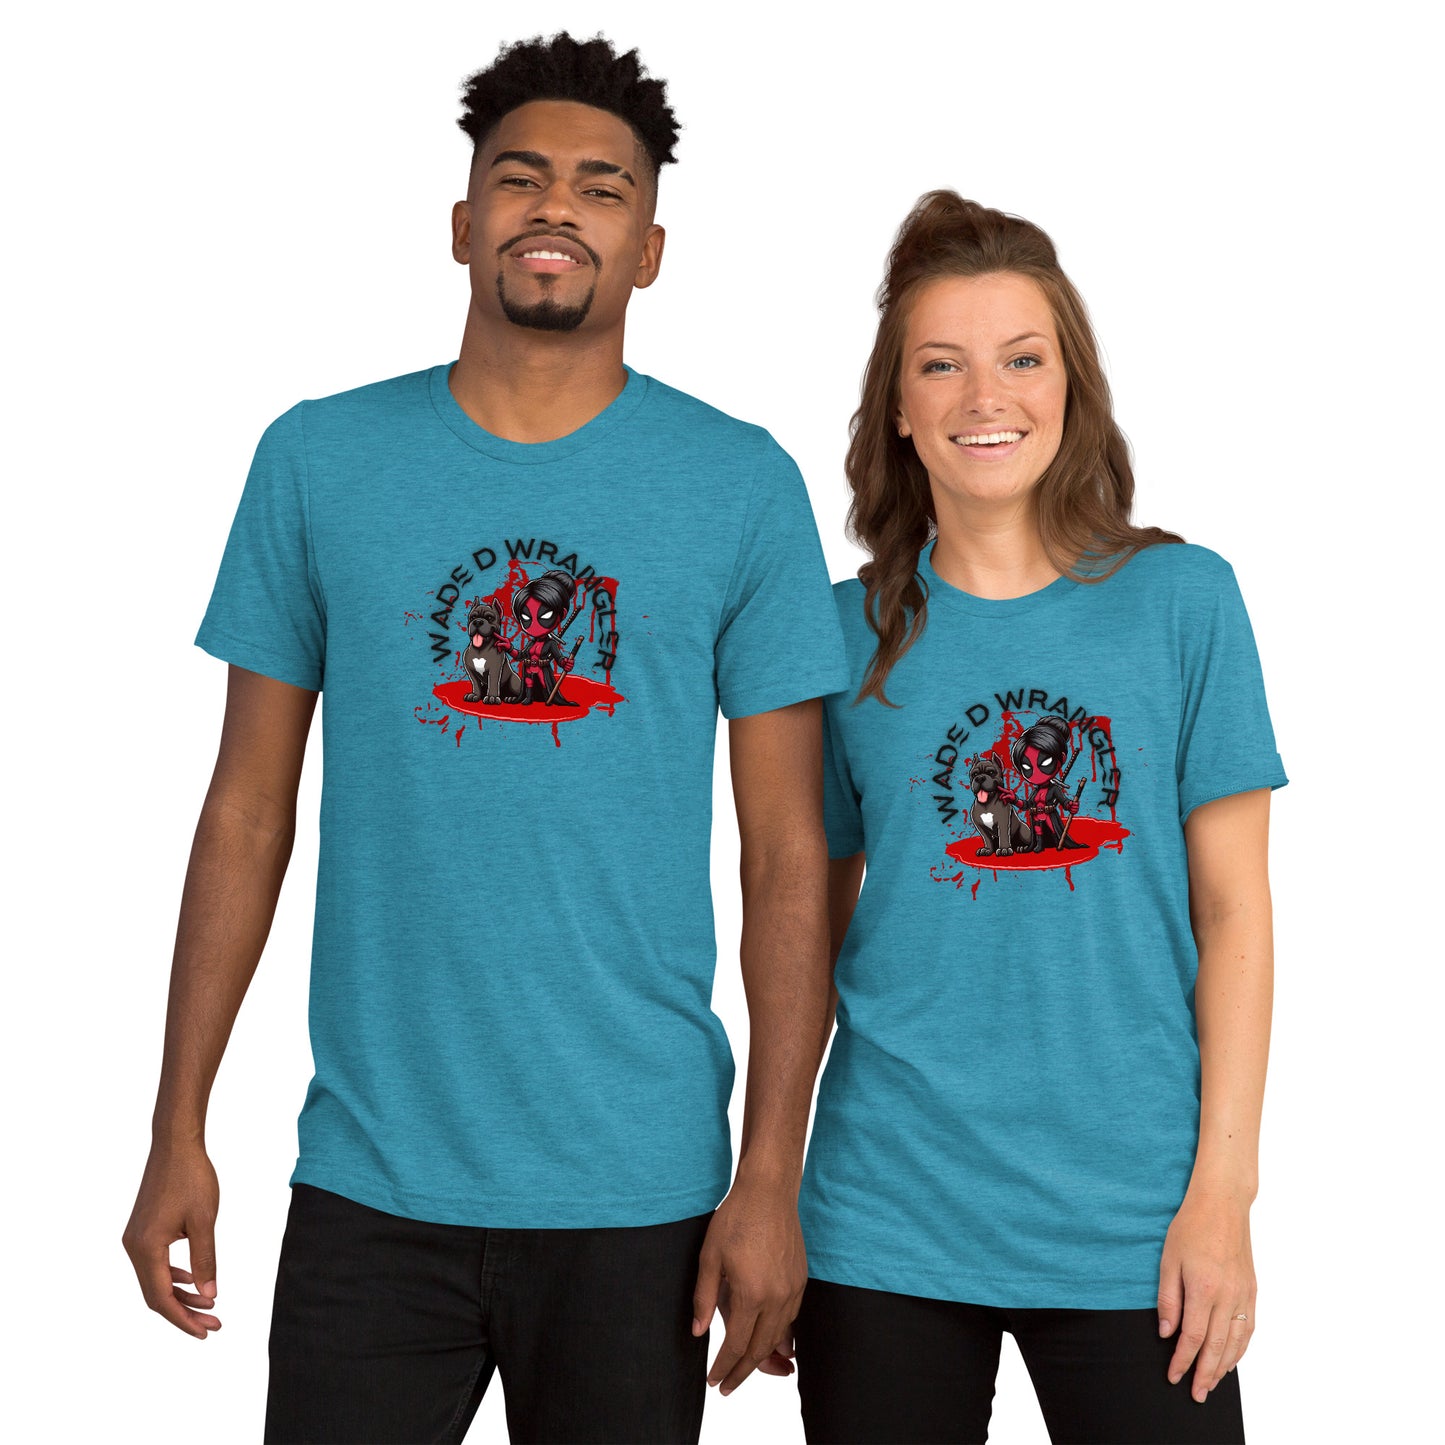 a man and a woman wearing matching t - shirts